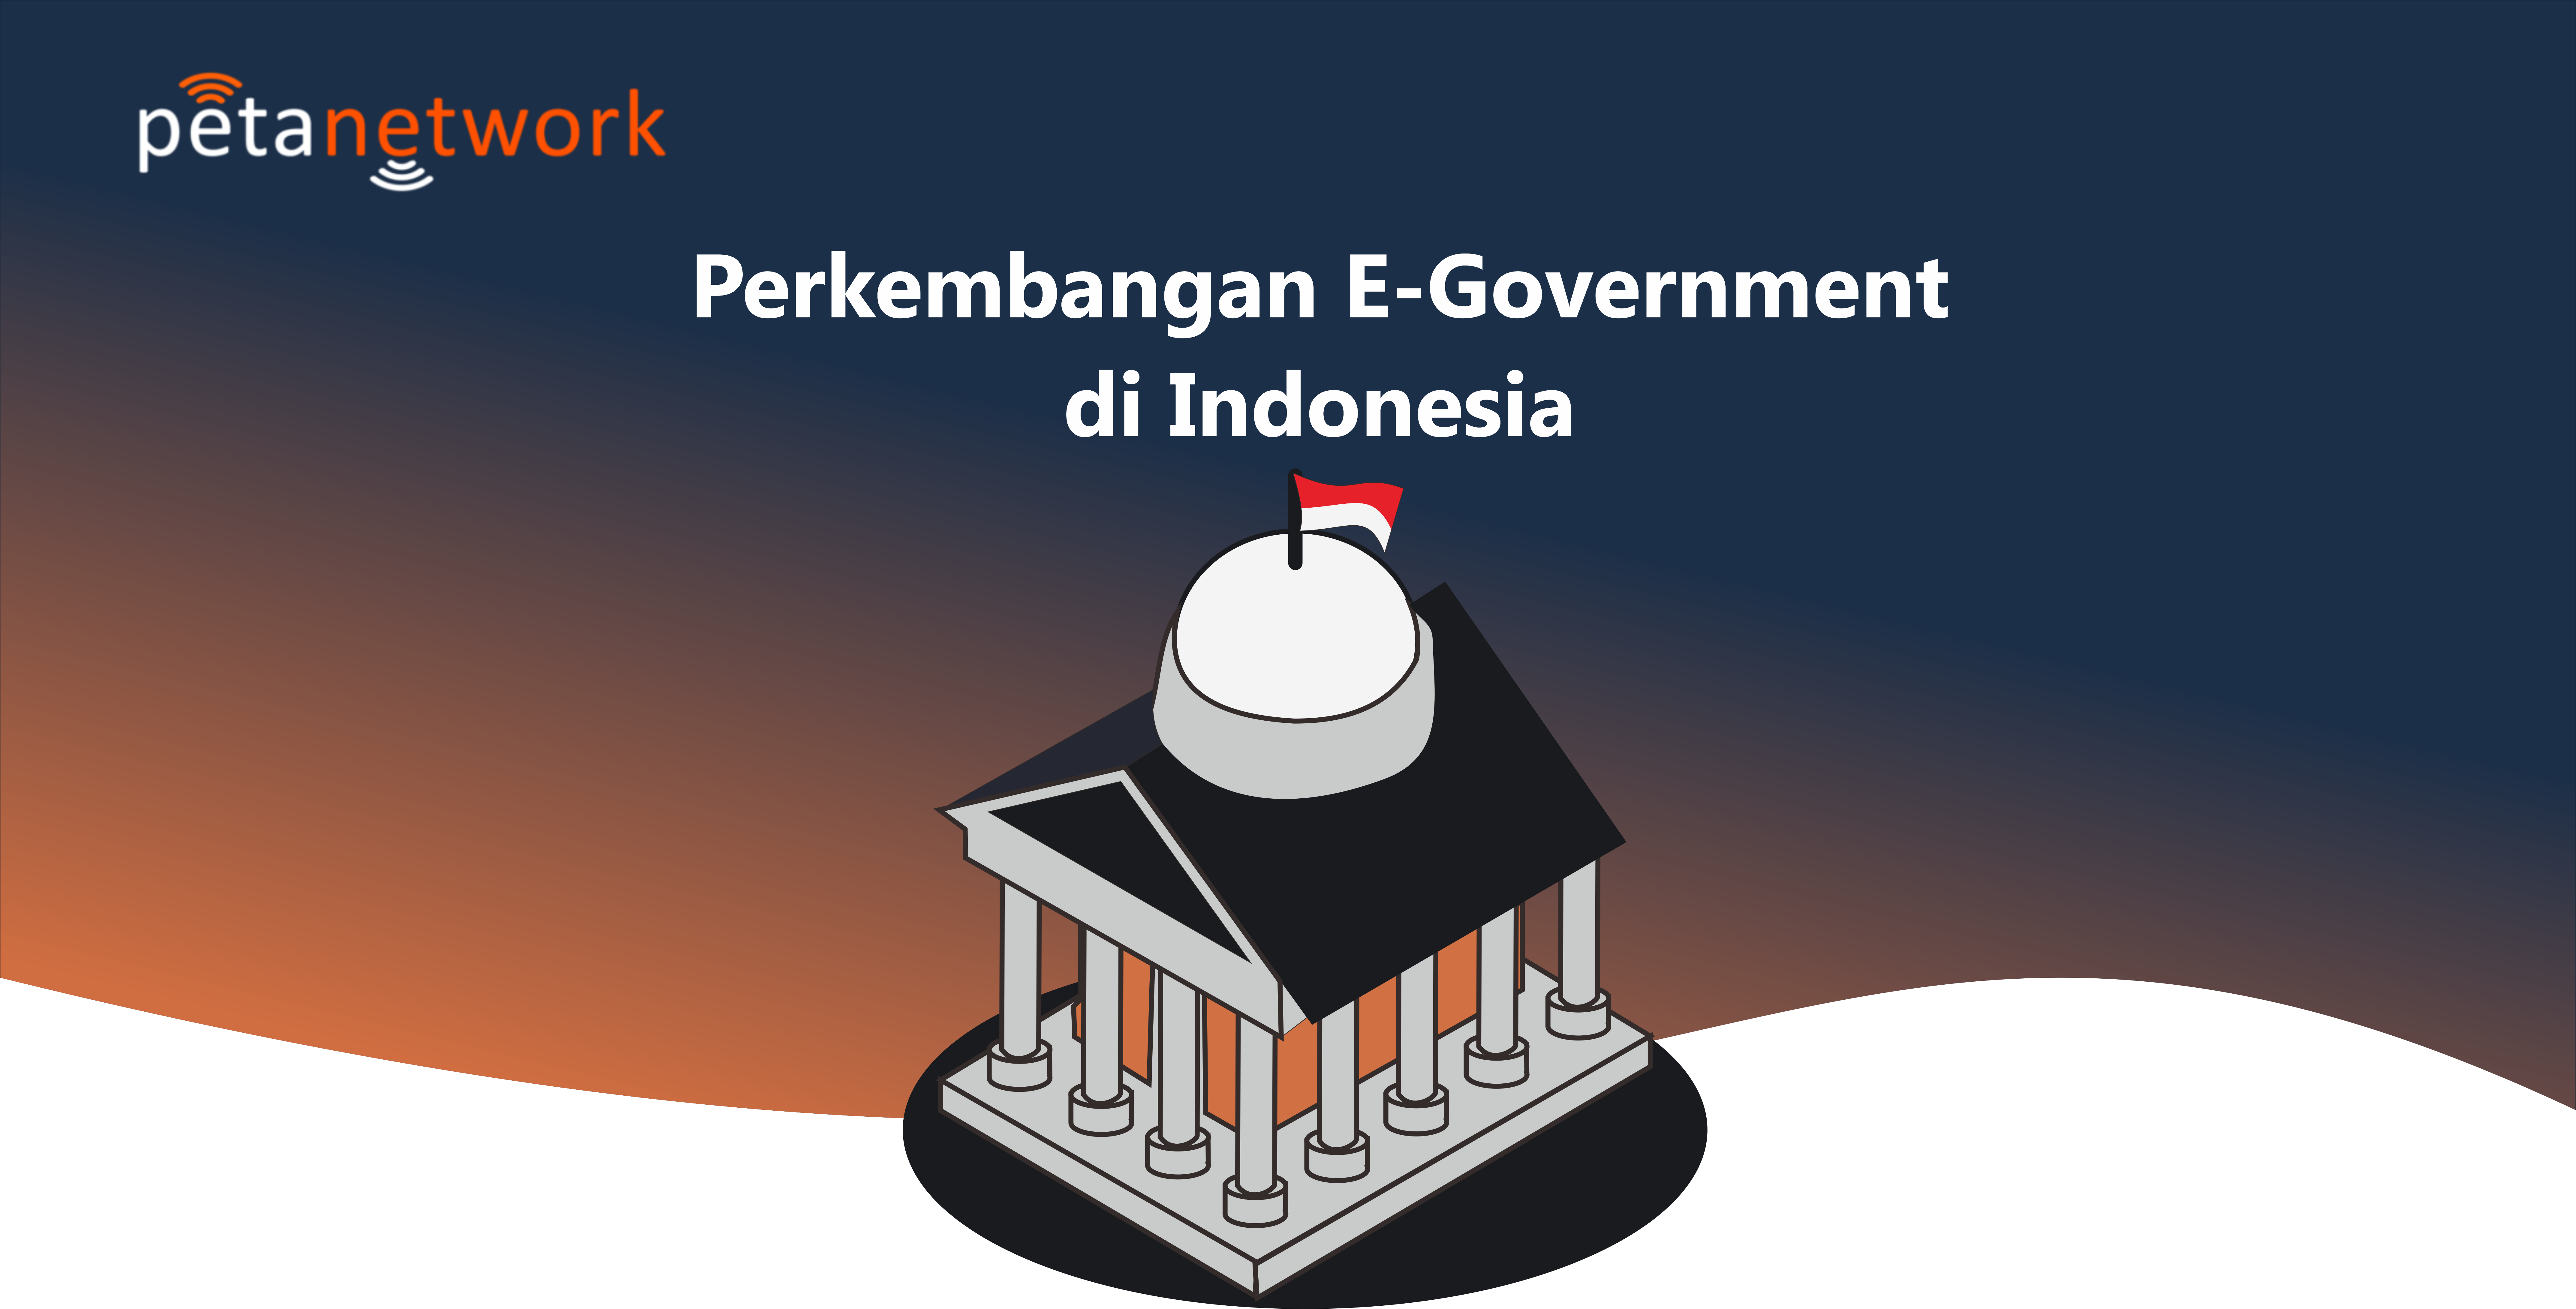 perkembangan e-government